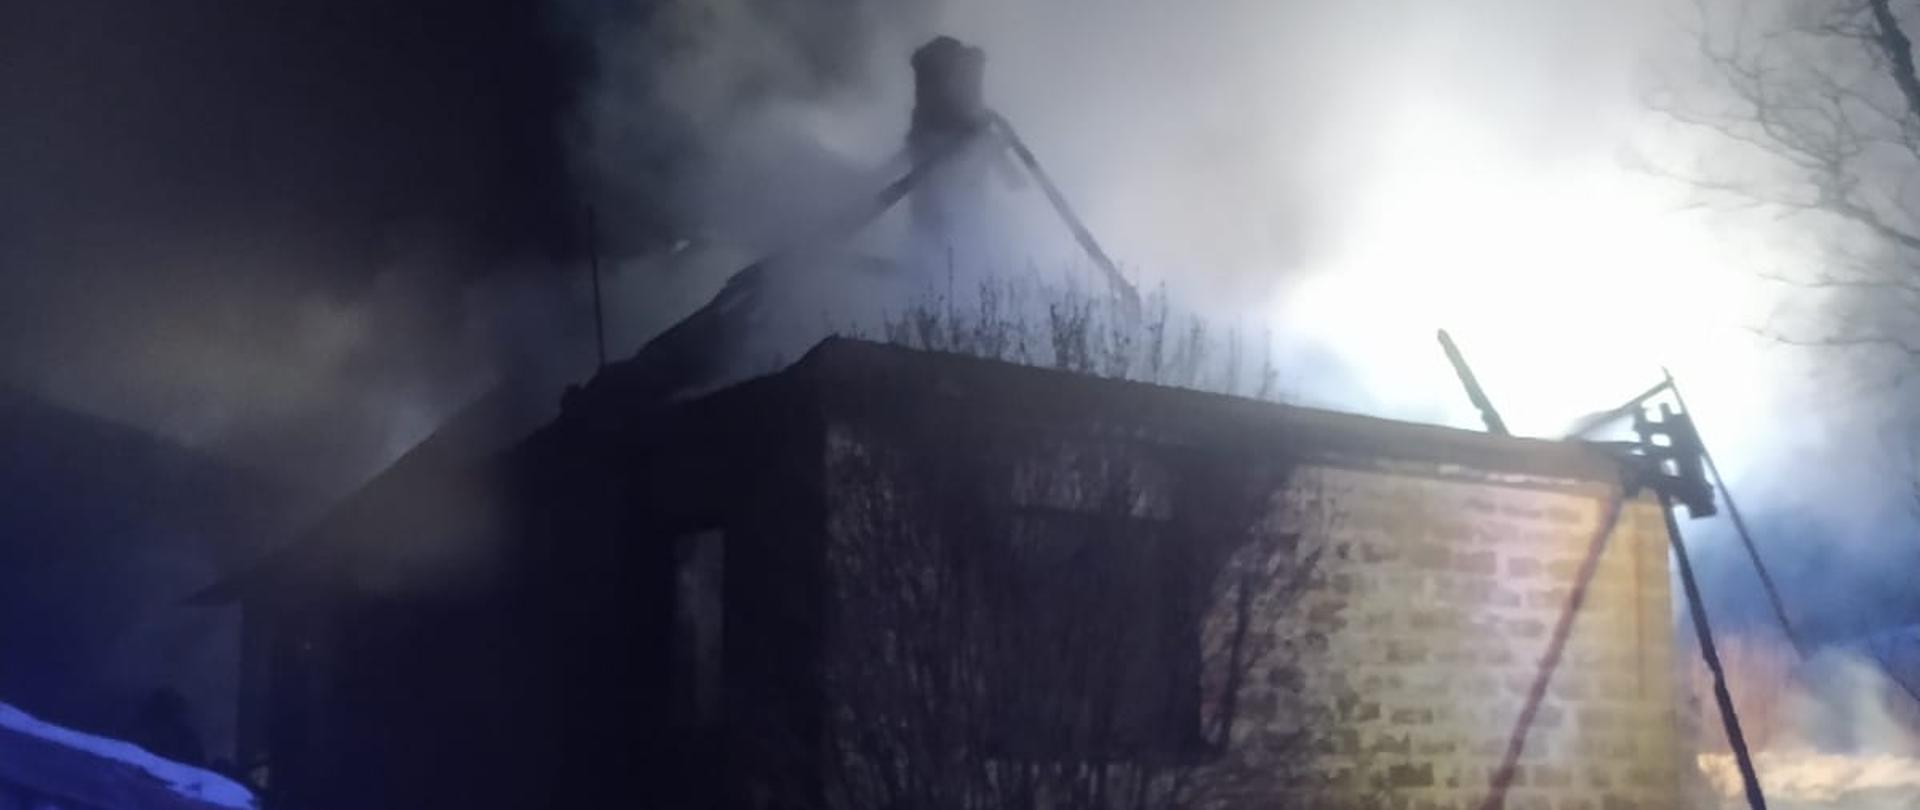 Pożar domu jednorodzinnego w Kondratkach